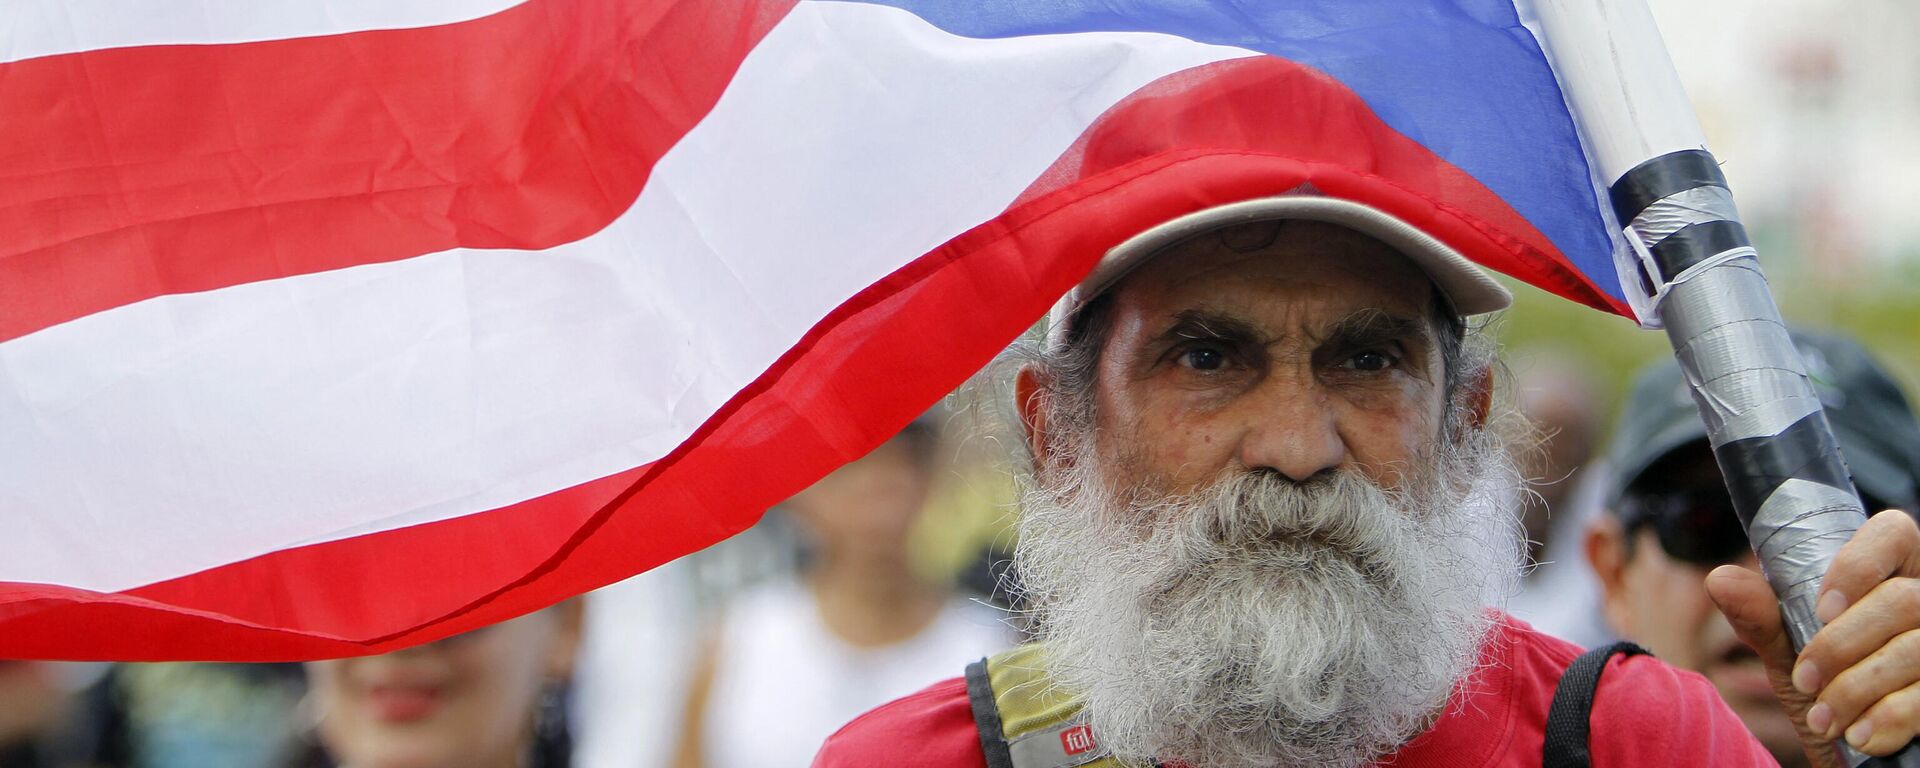 Ciudadano puertorriqueño durante una protesta en 2017. - Sputnik Mundo, 1920, 17.12.2022